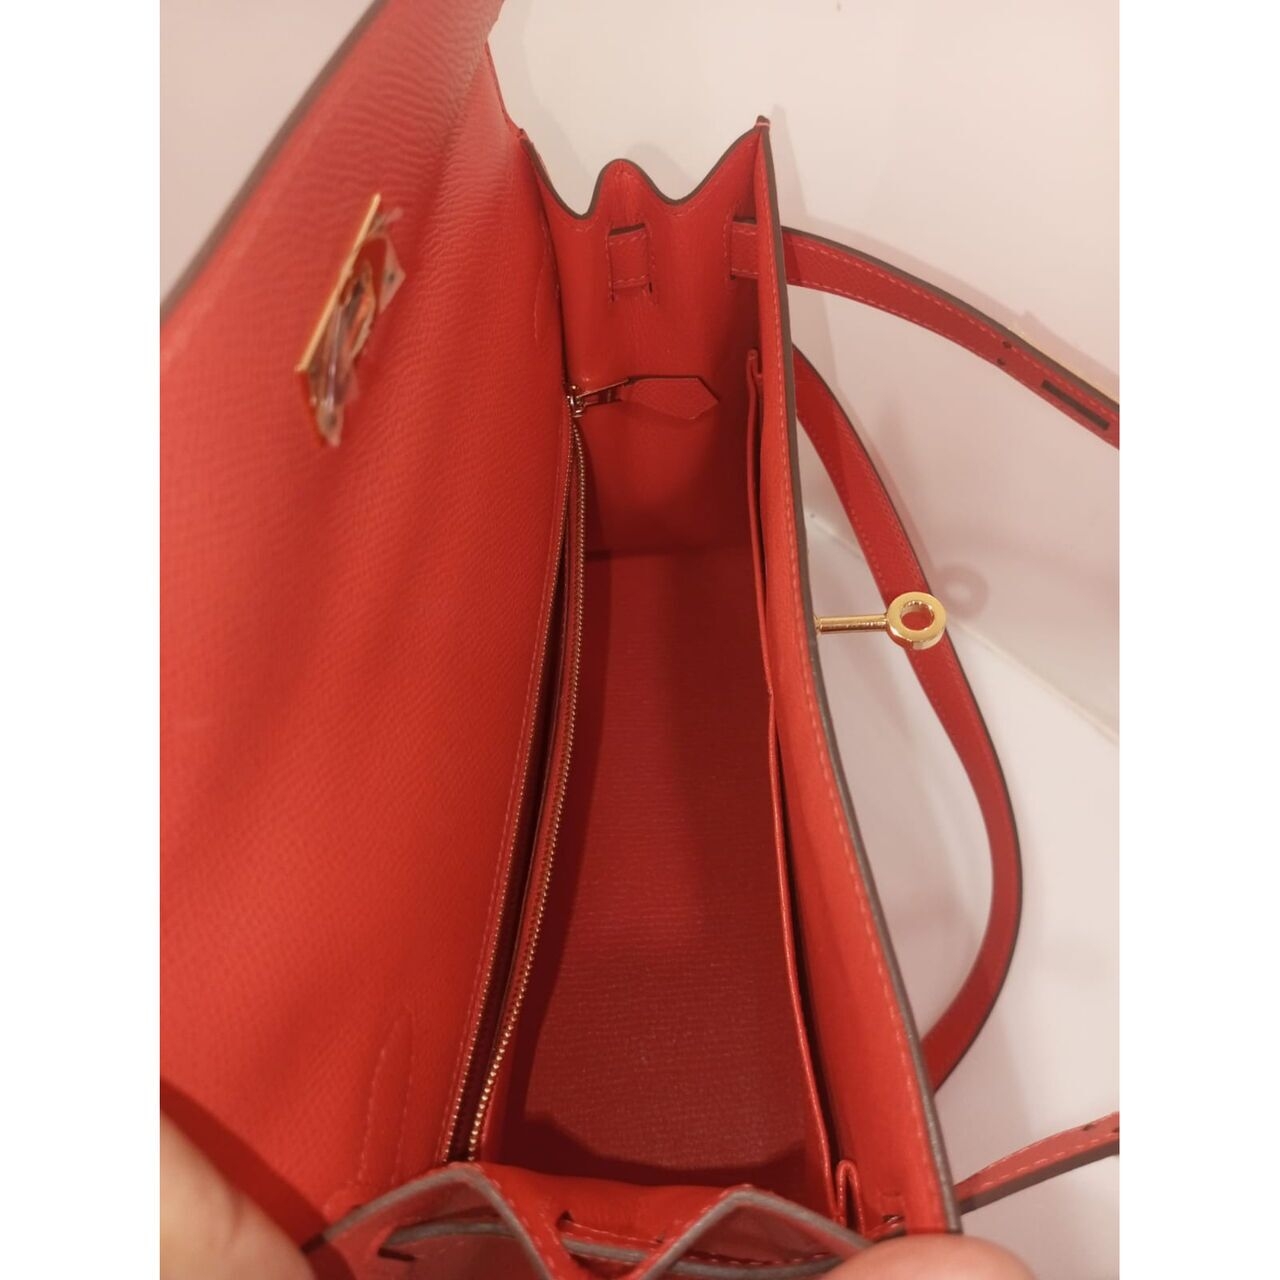 Hermes Kelly Red Bag